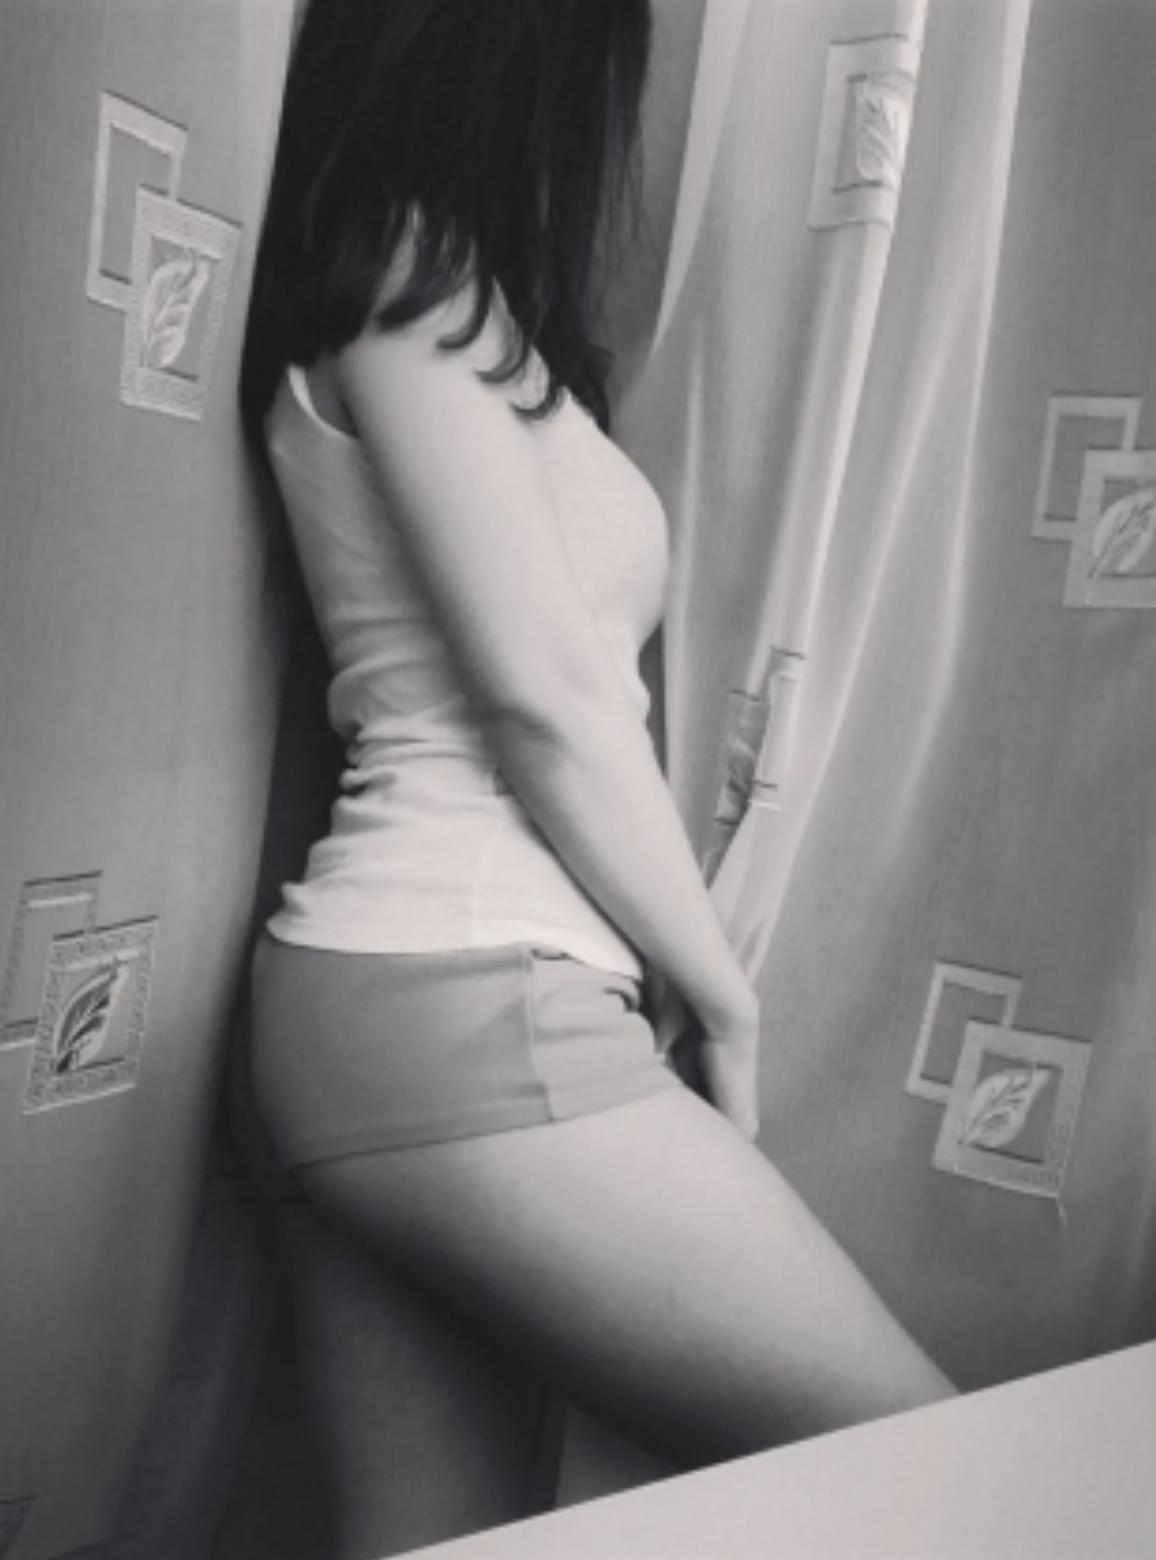 Проститутка Ульяна, фото 4, тел: 0955437354. В центре города - Киев